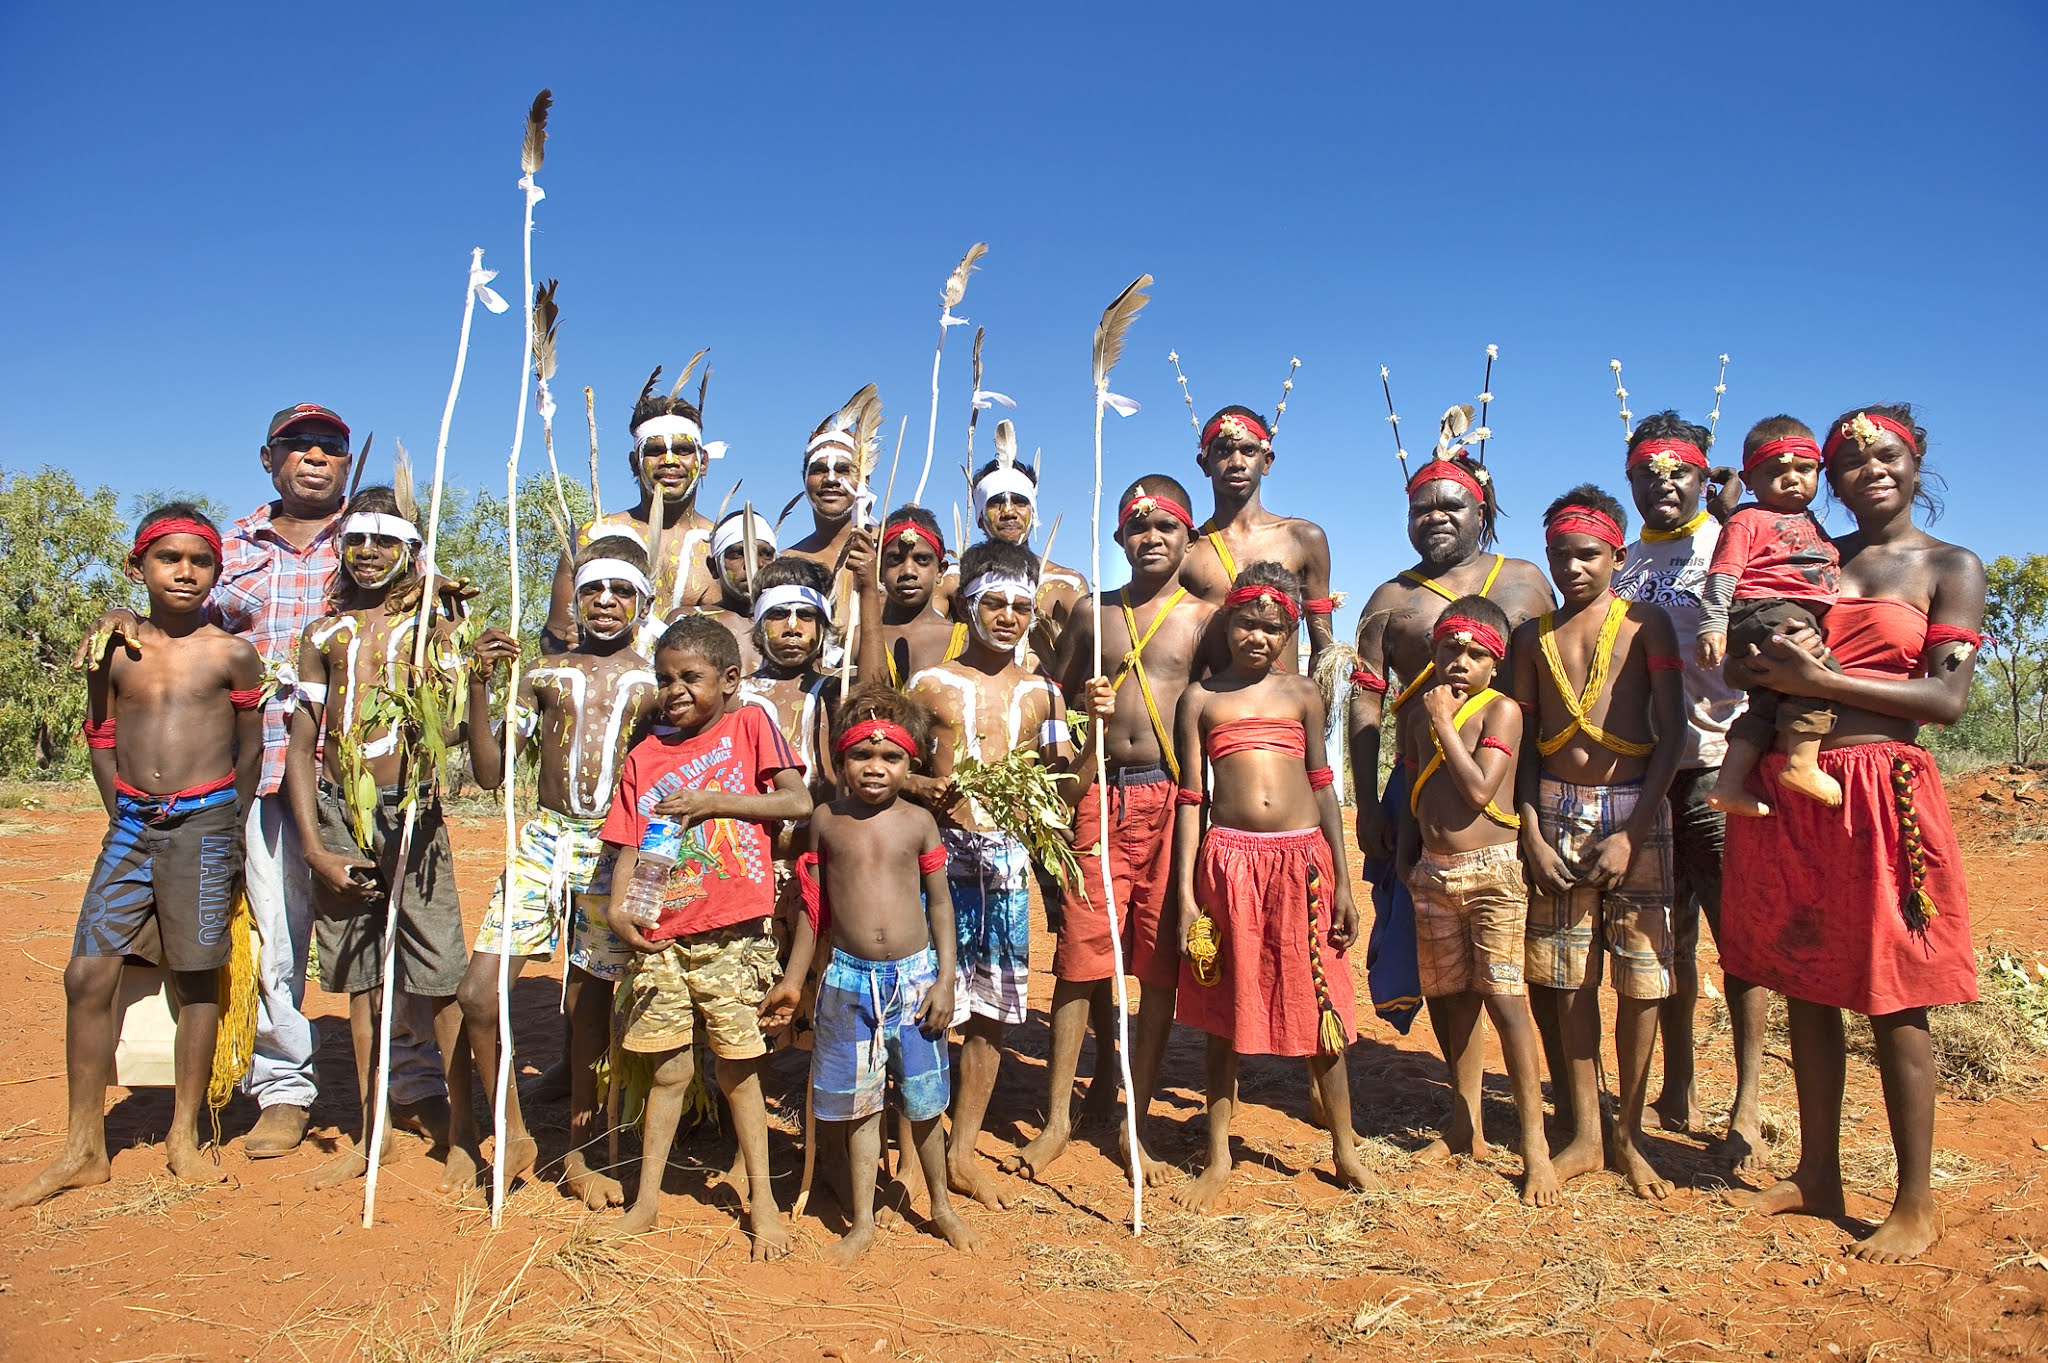 Tribe people. Коренные аборигены Австралии. Коренной народ Австралии. Бушмены Австралии. Бушмены народ Австралии.